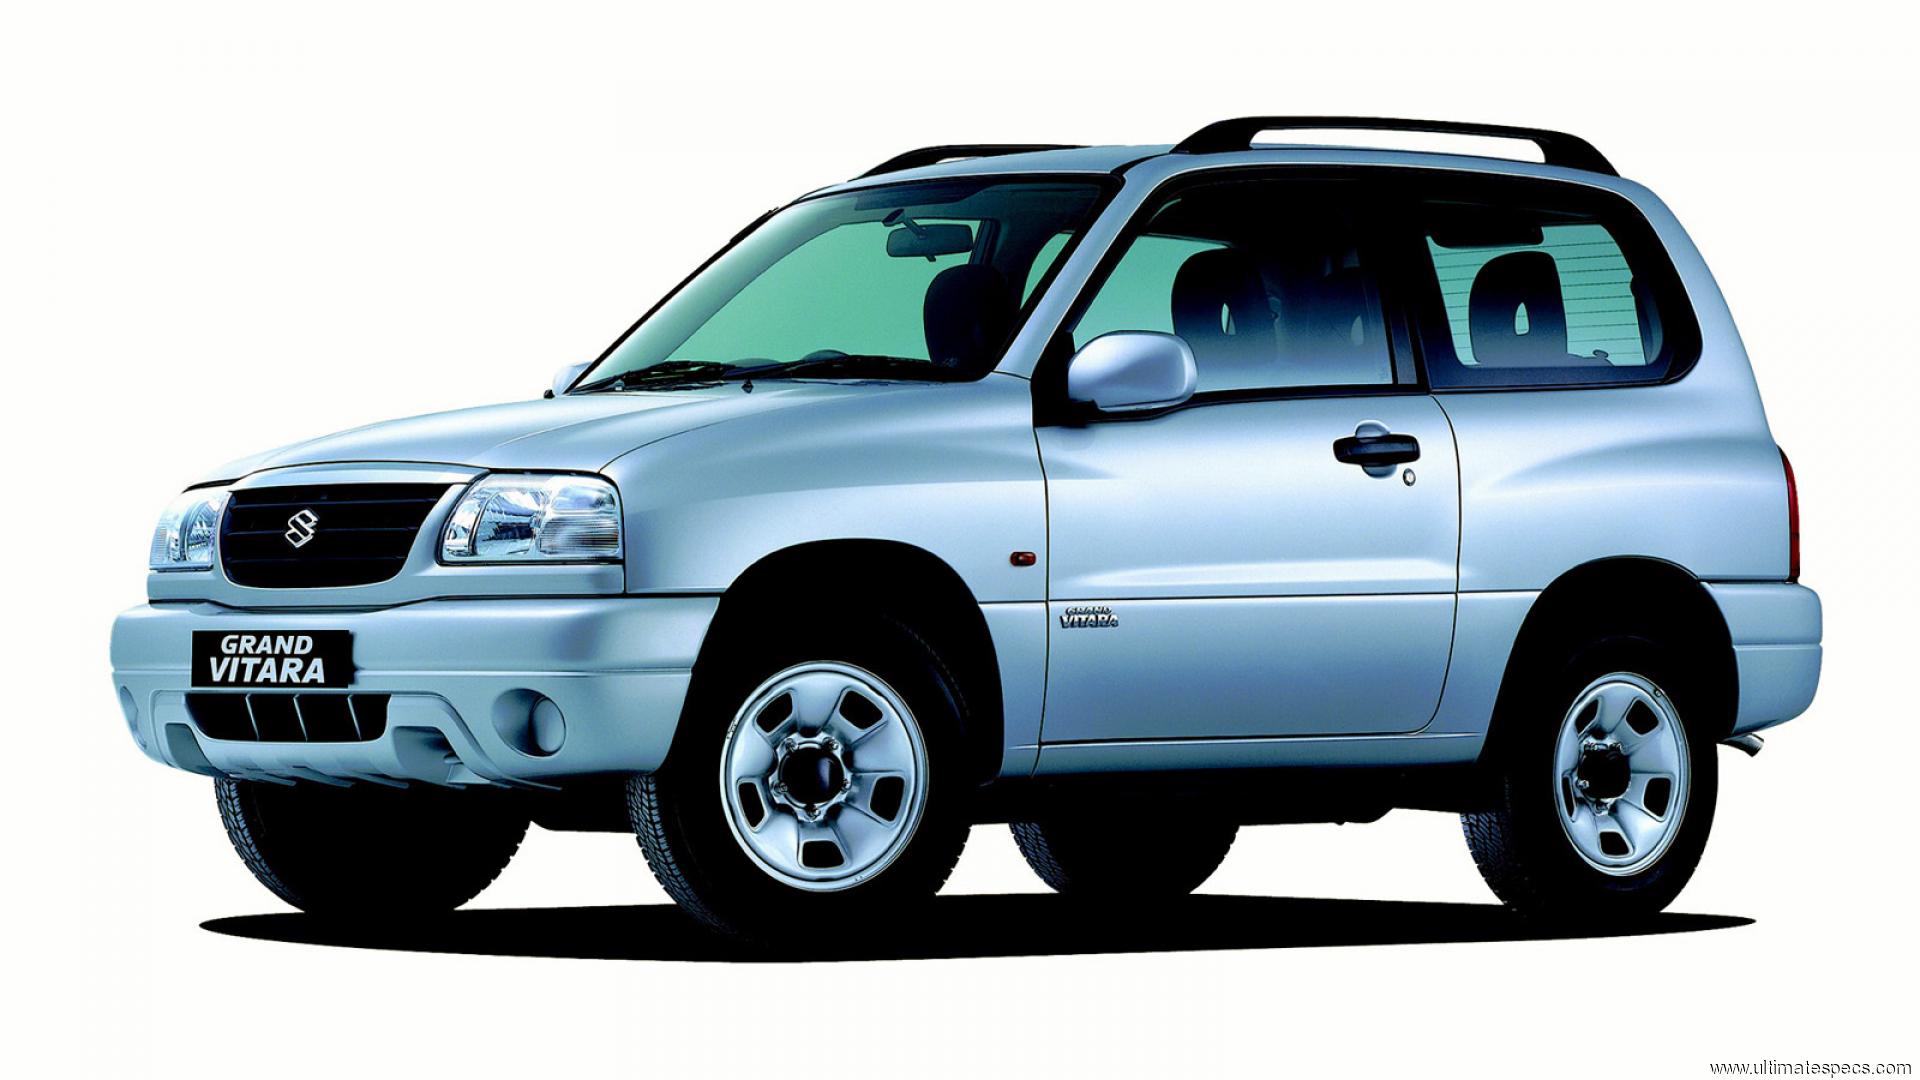 Vitara 2000. Suzuki Grand Vitara 2004. Suzuki Grand Vitara 2001-2005. Suzuki Grand Vitara 1997. Suzuki Grand Vitara 2000.